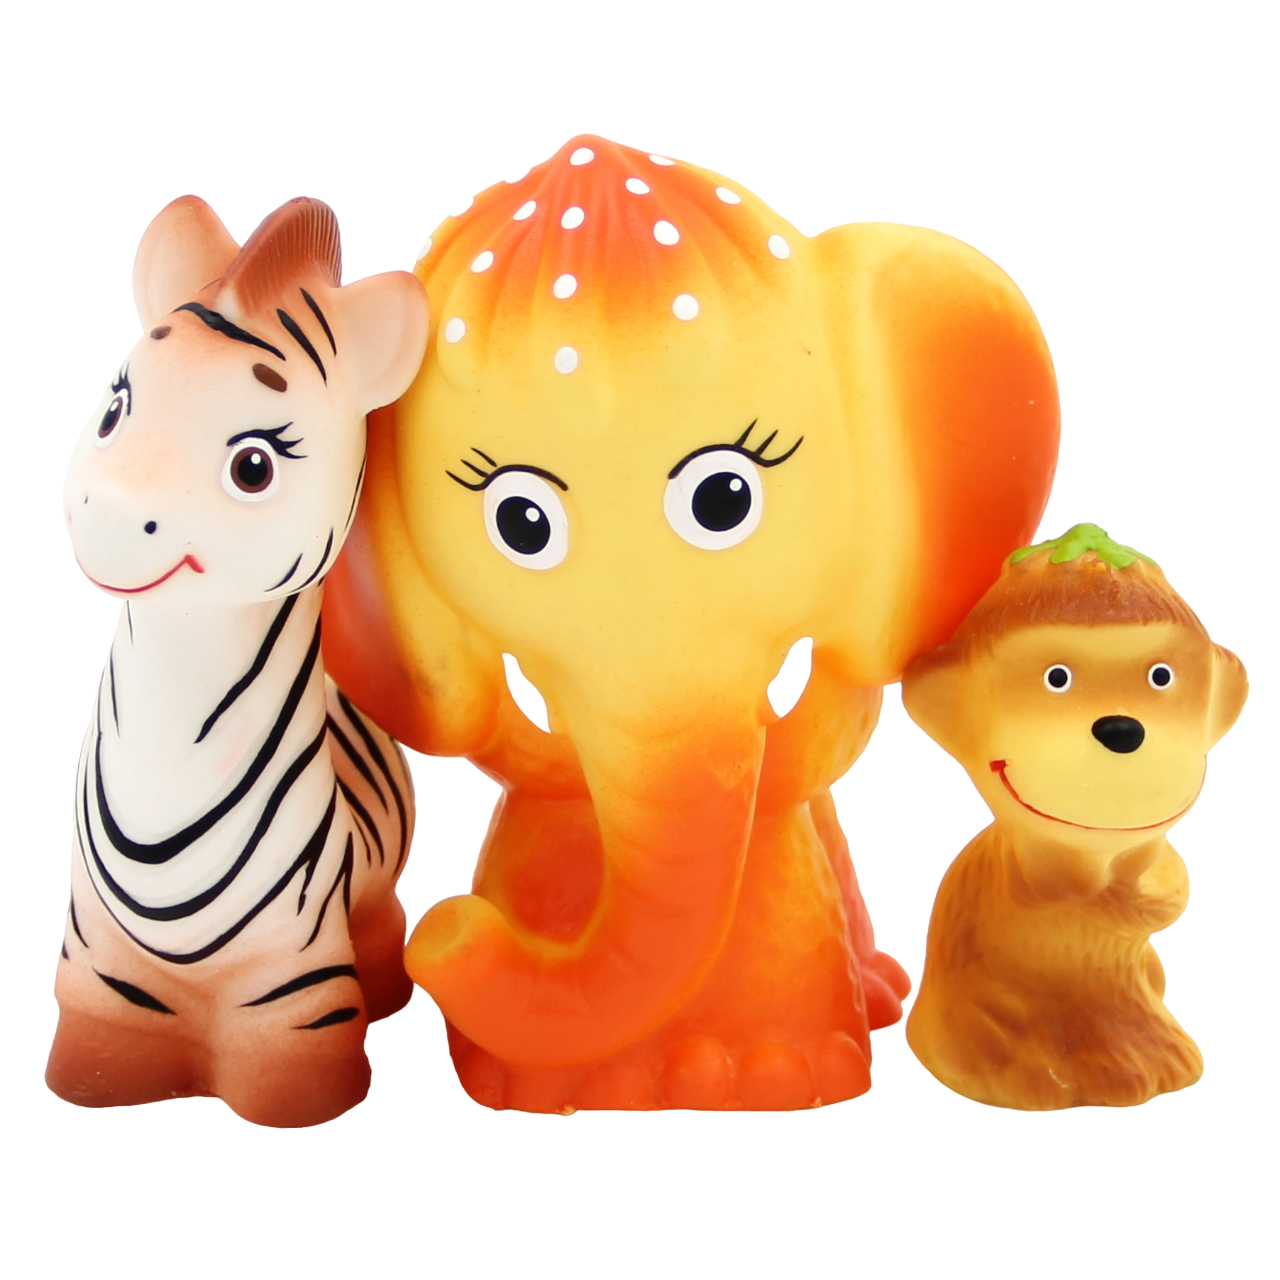 Кудесники: Набор Лимпопо - фигурки-игрушки из ПВХ Пластизоля (Резиновые игрушки), СИ-933